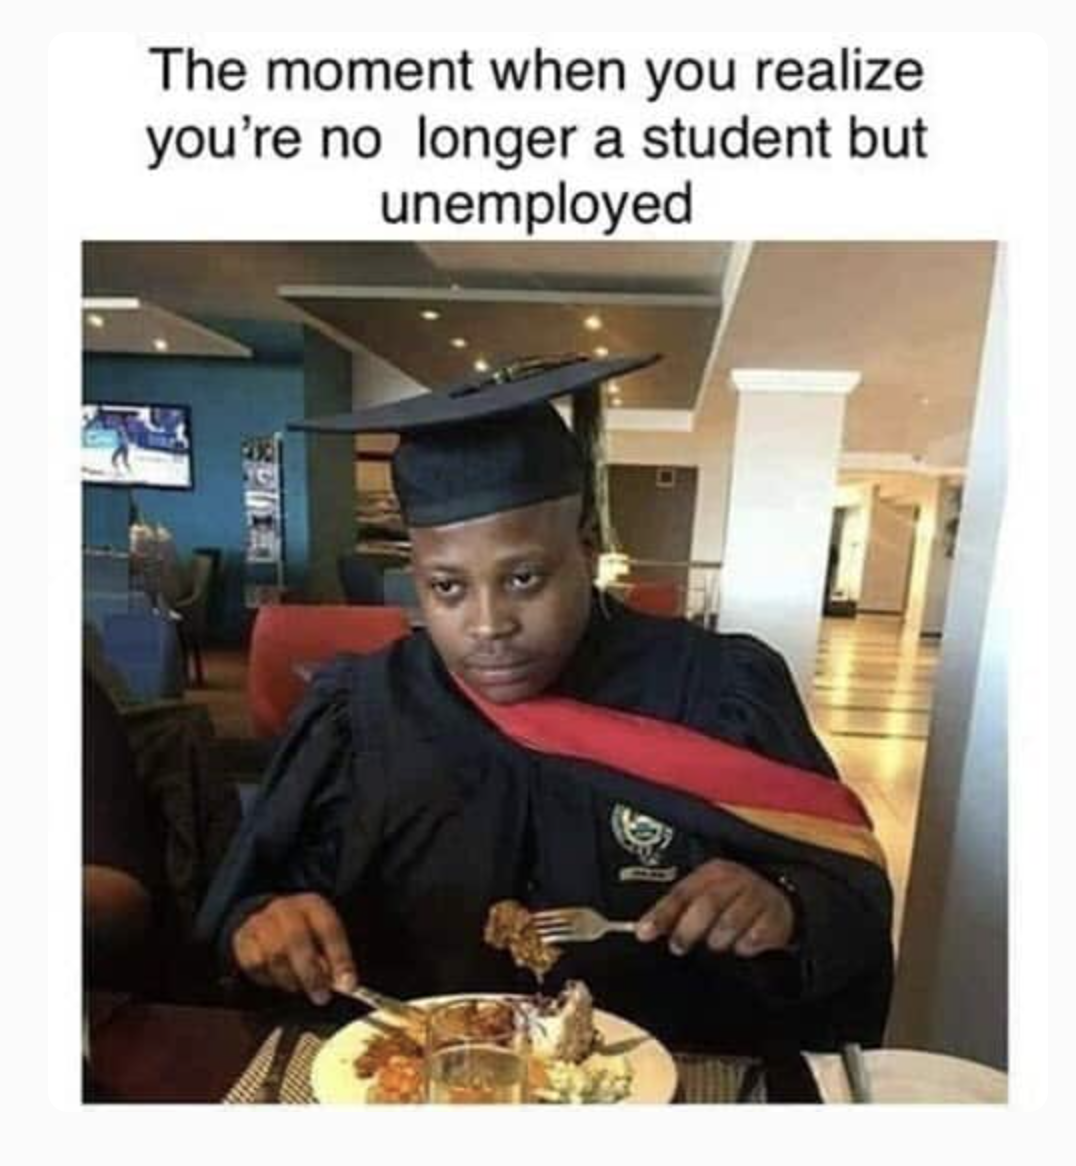 college graduation party meme